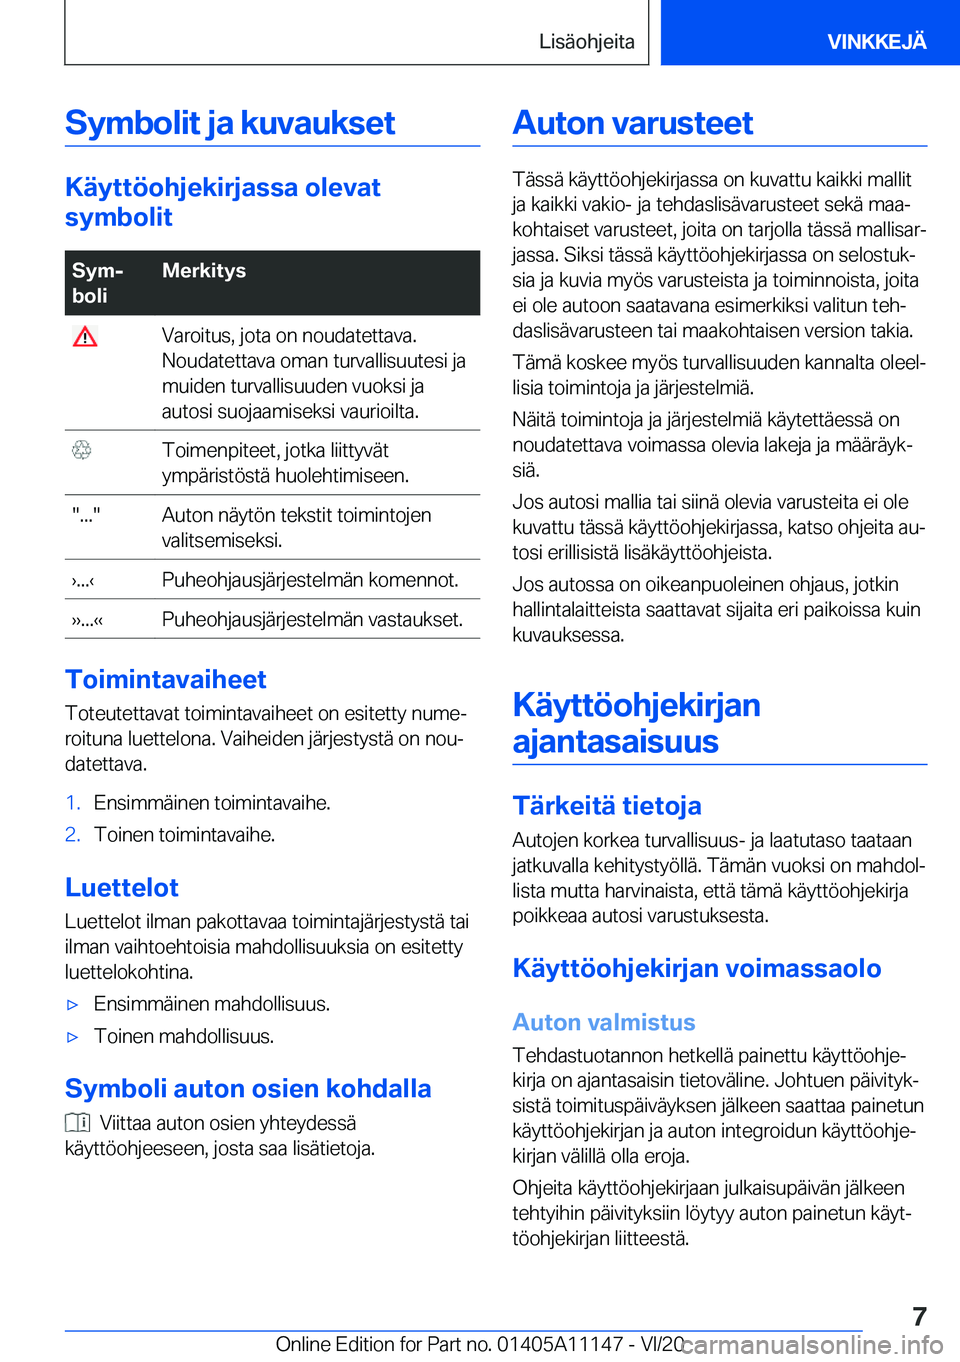 BMW 8 SERIES COUPE 2021  Omistajan Käsikirja (in Finnish) �S�y�m�b�o�l�i�t��j�a��k�u�v�a�u�k�s�e�t
�K�